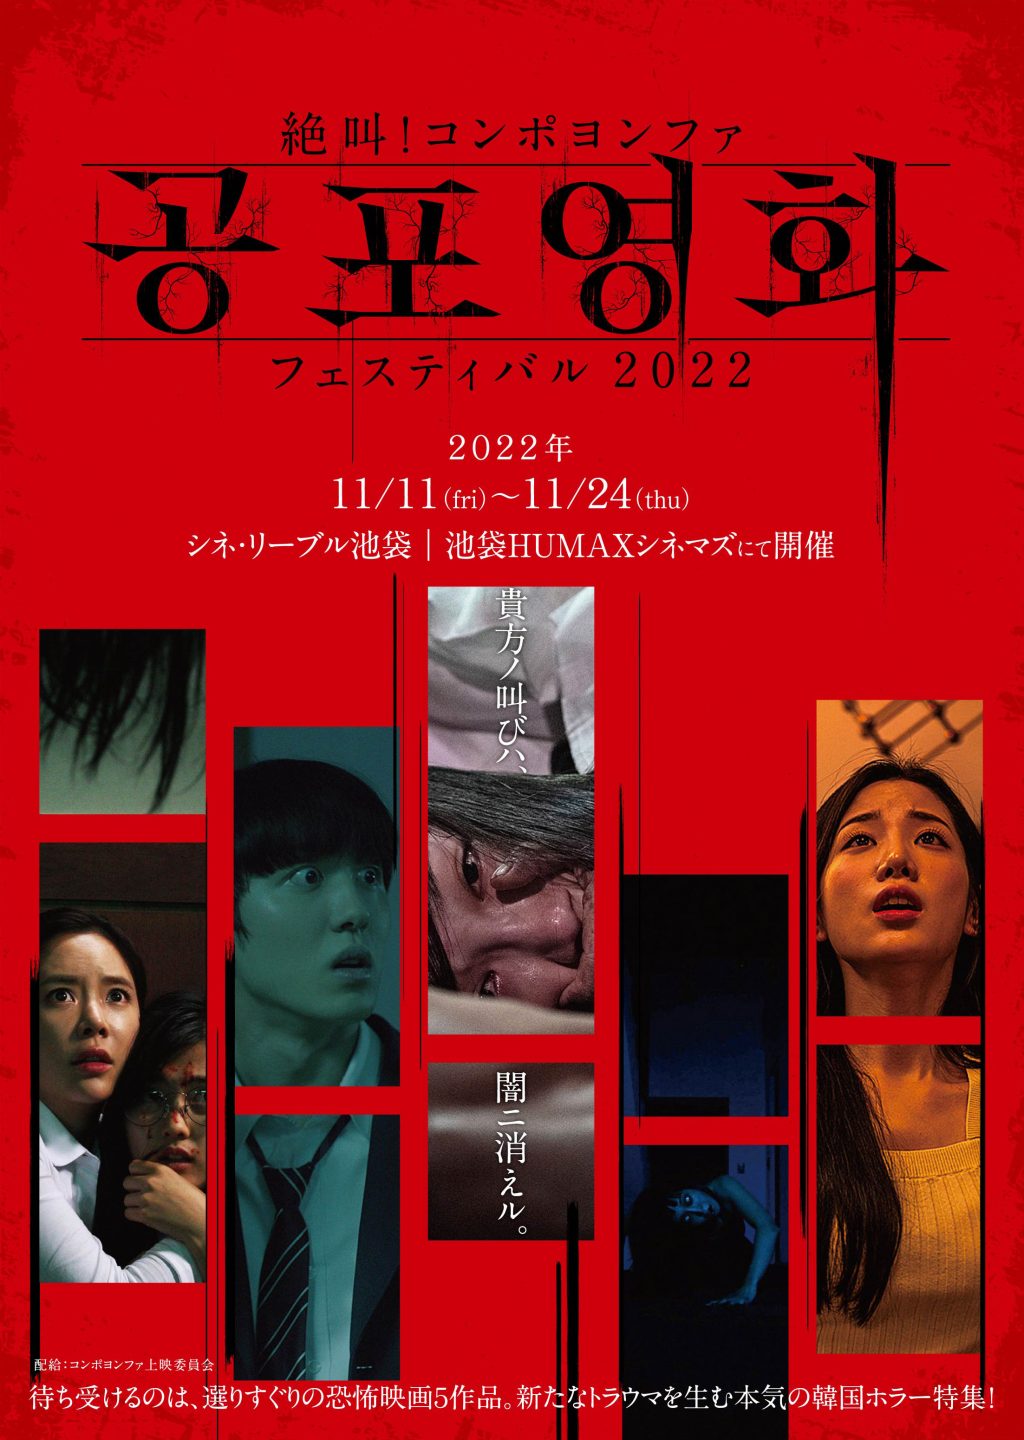 kong-po_yong-hwa_poster-1024x1440.jpg